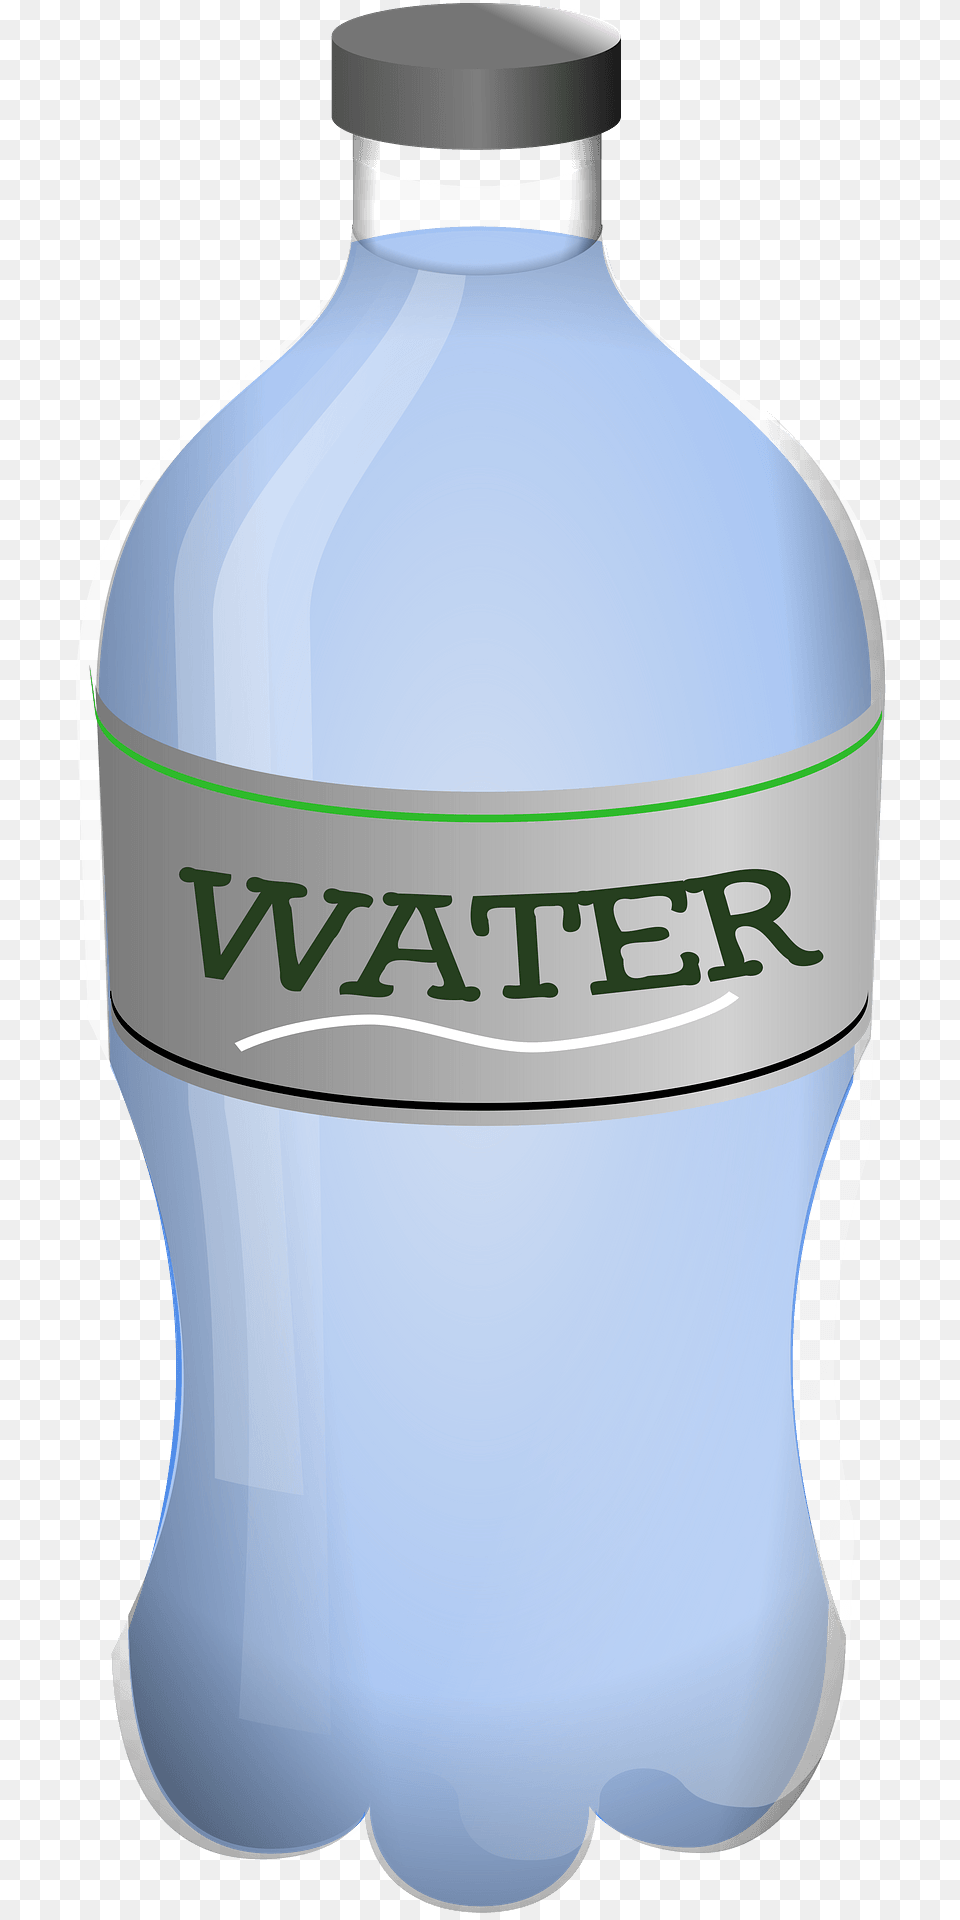 Bottled Water Clipart, Bottle, Water Bottle, Shaker, Beverage Free Transparent Png